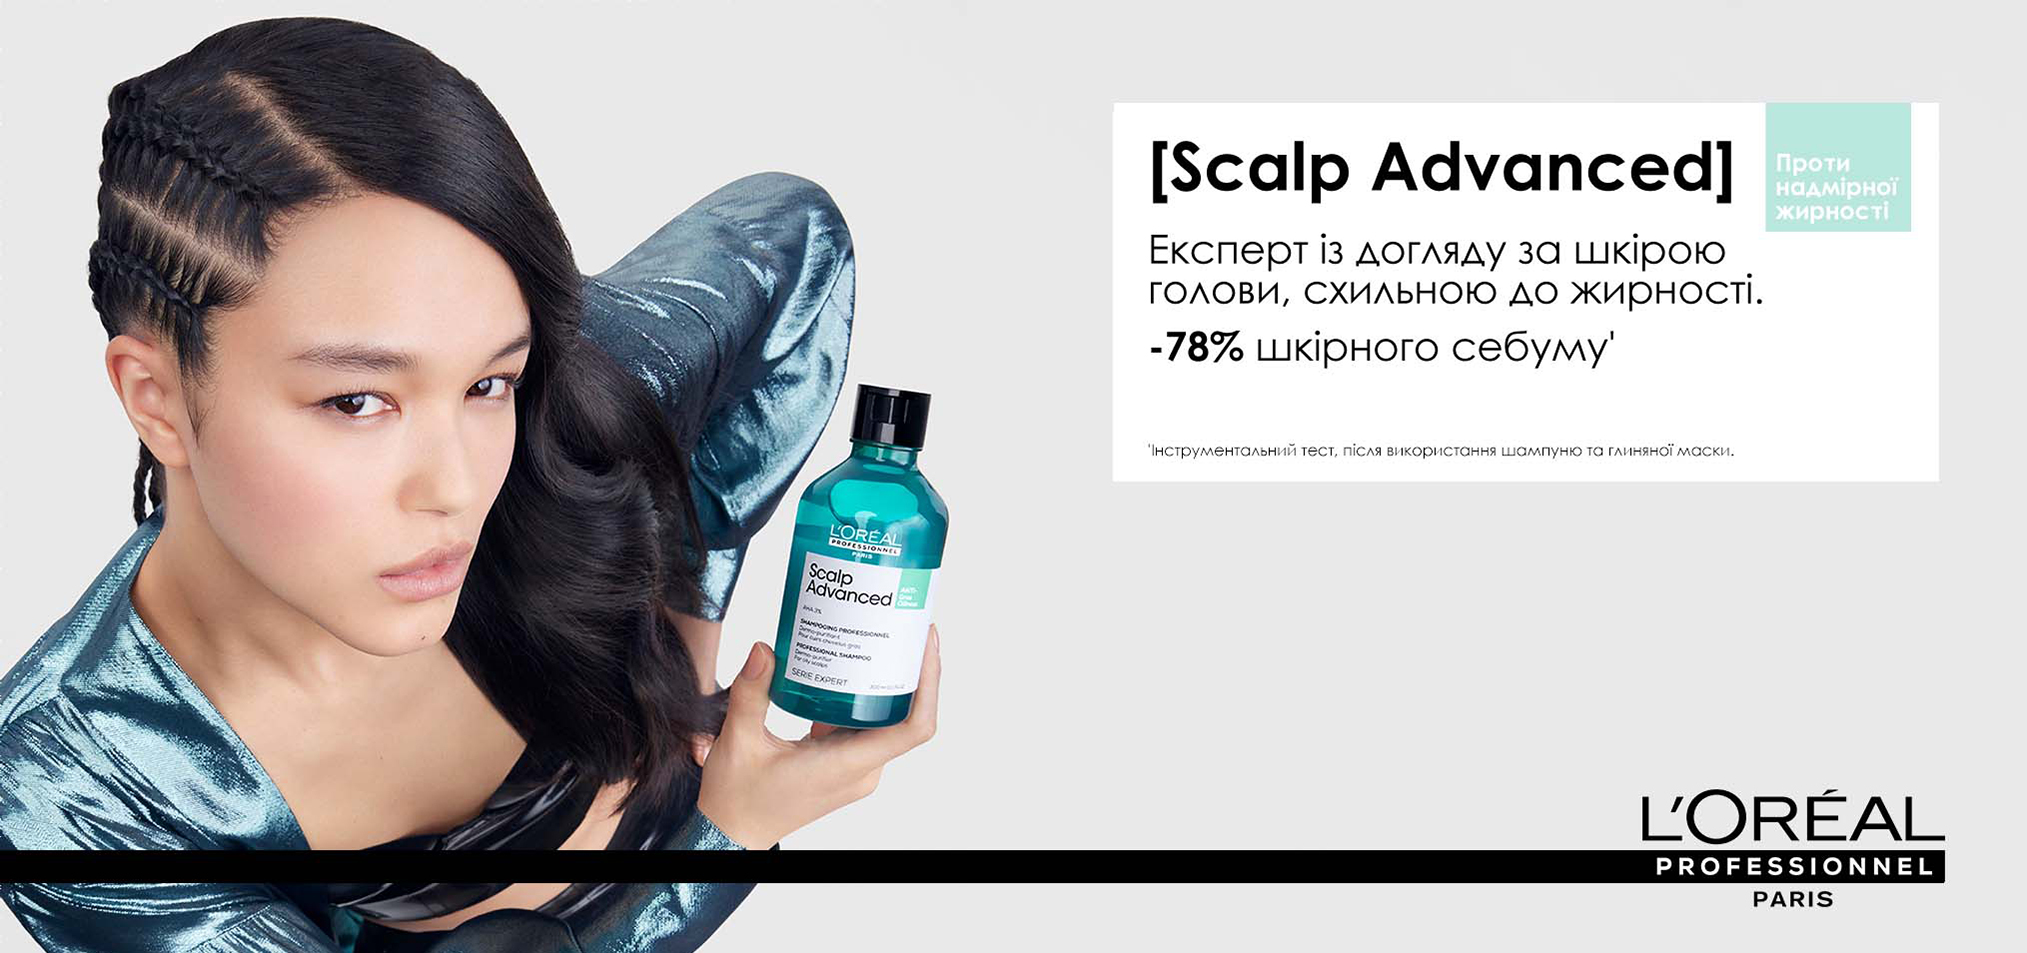 Професійний очищуючий шампунь для схильного до жирності волосся - L'Oreal Professionnel Scalp Advanced Anti-Oiliness Shampoo